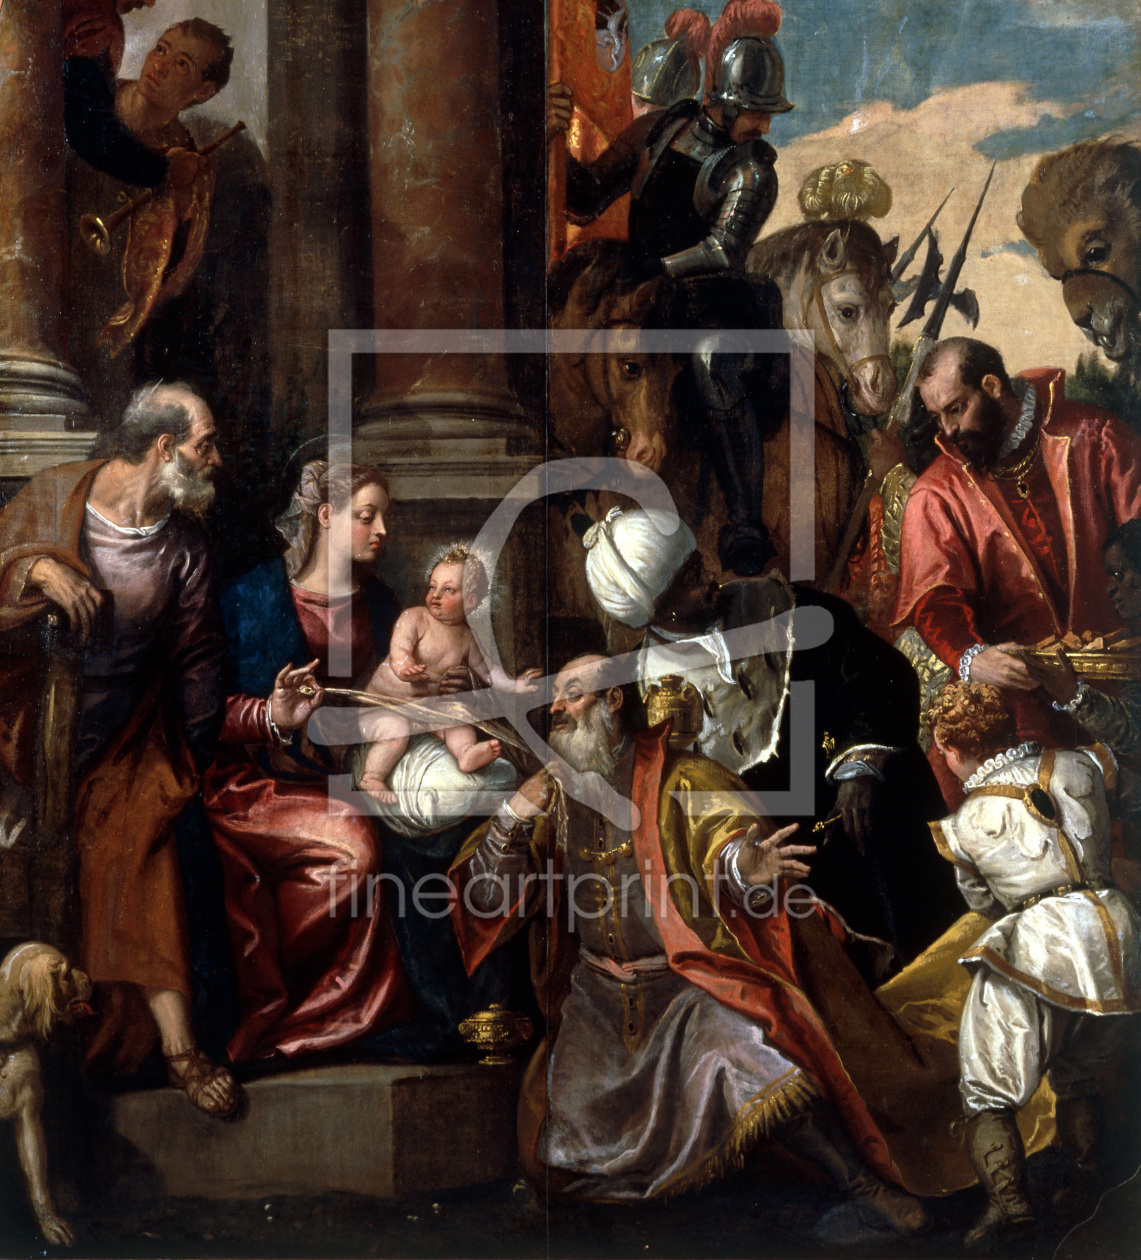 Bild-Nr.: 30009357 P.Veronese / Adoration of the Kings /Ptg erstellt von Veronese, Paolo